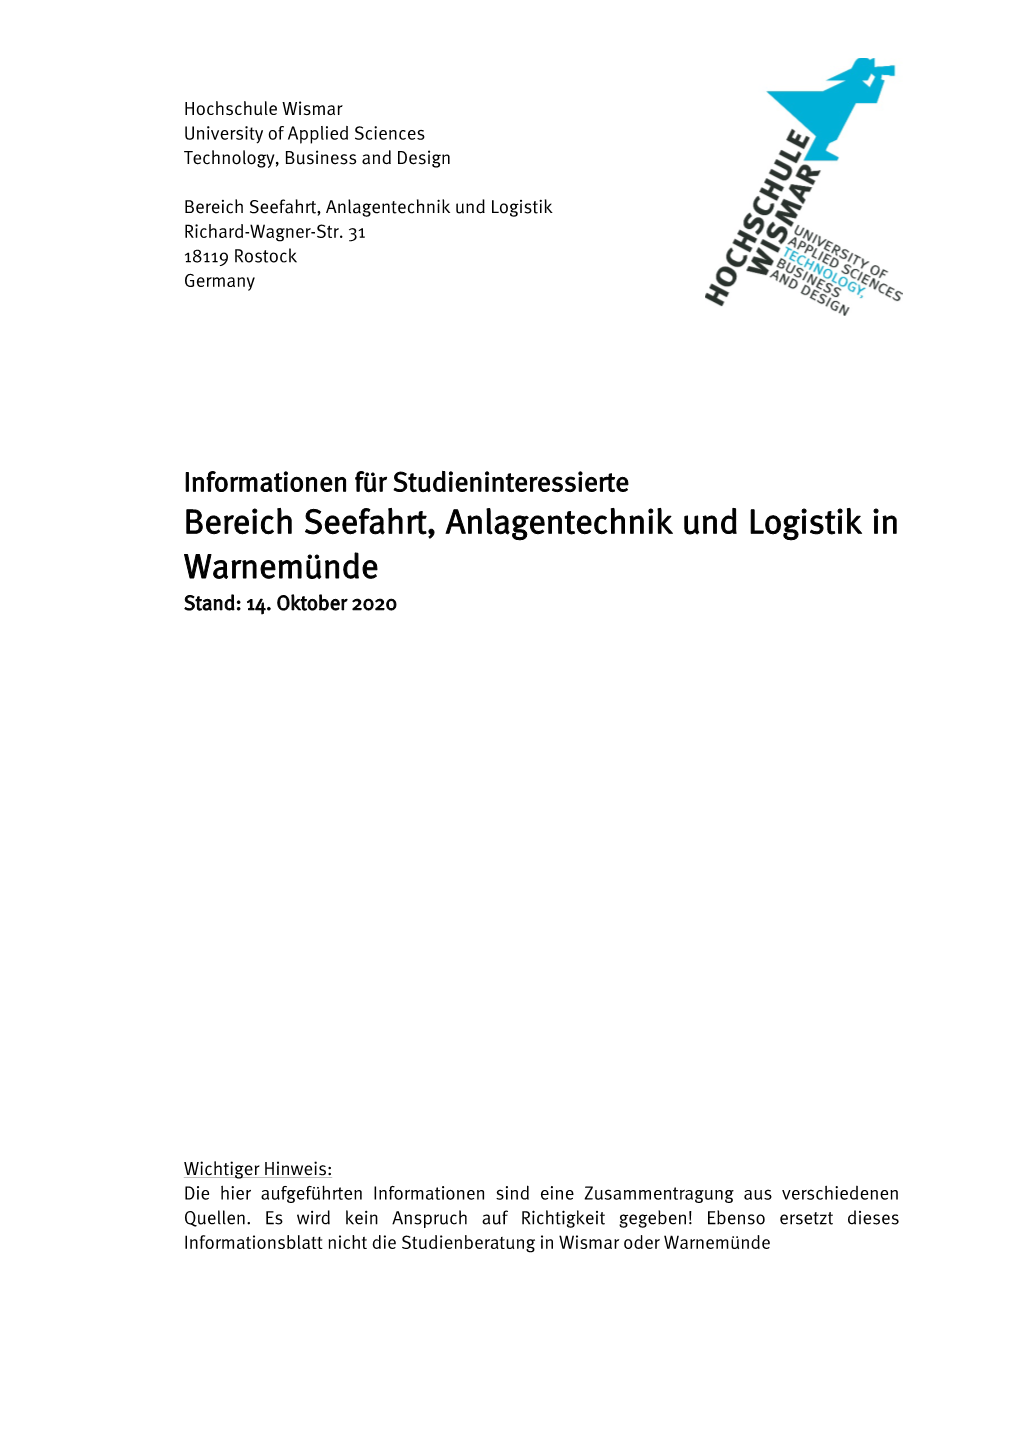 Bereich Seefahrt, Anlagentechnik Und Logistik in Warnemünde Stand: 14